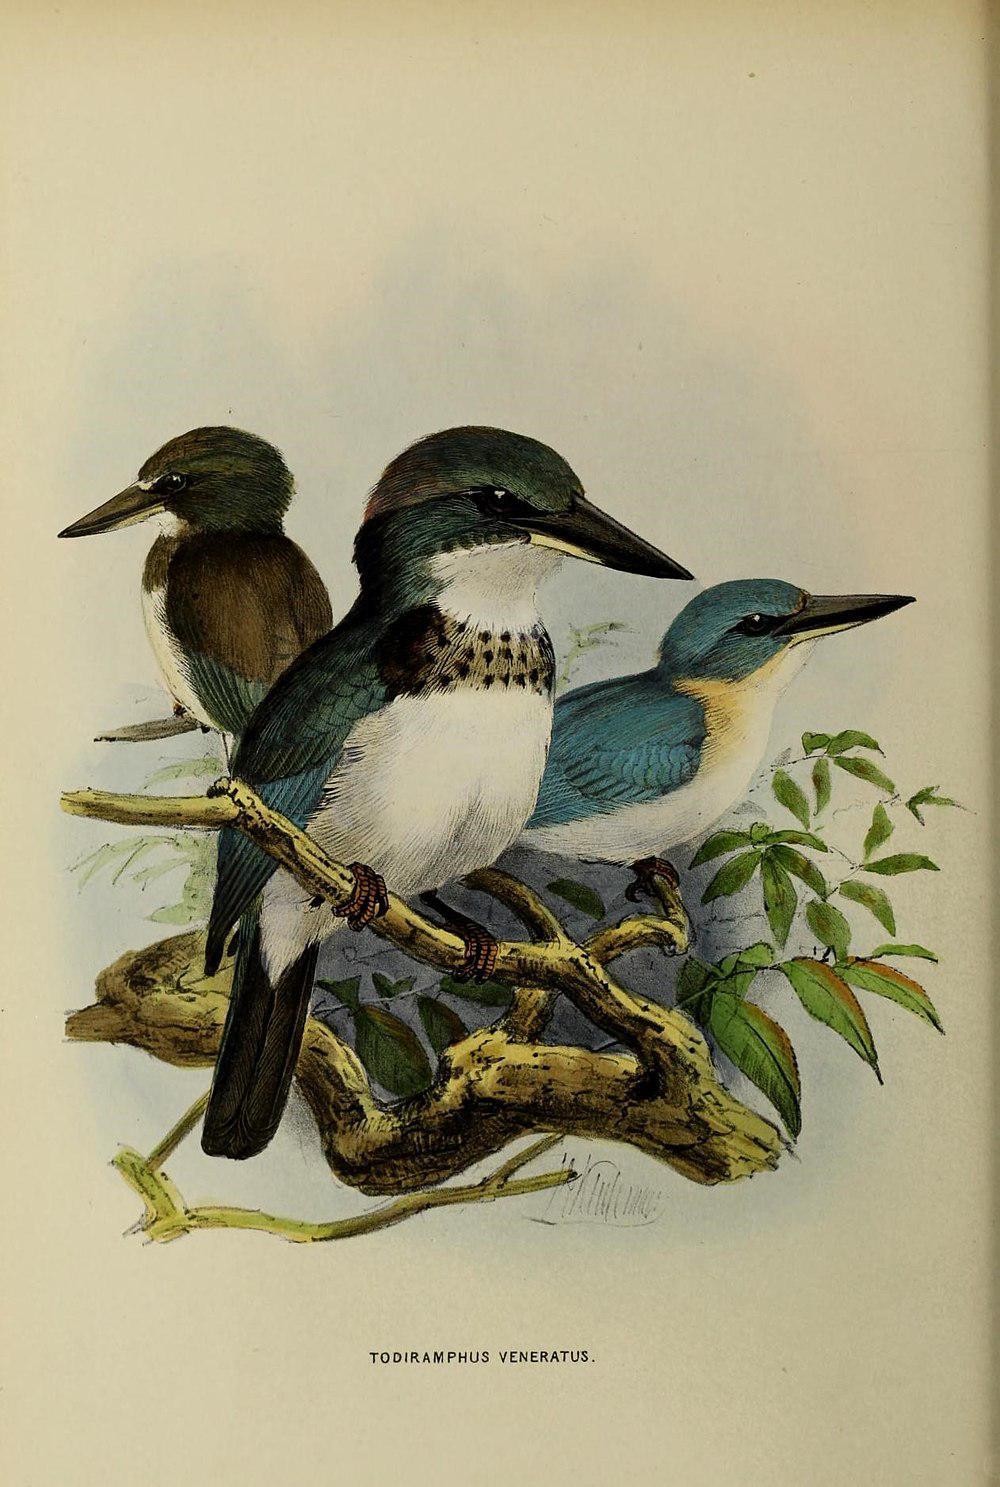 社会岛翡翠 / Society Kingfisher / Todiramphus veneratus